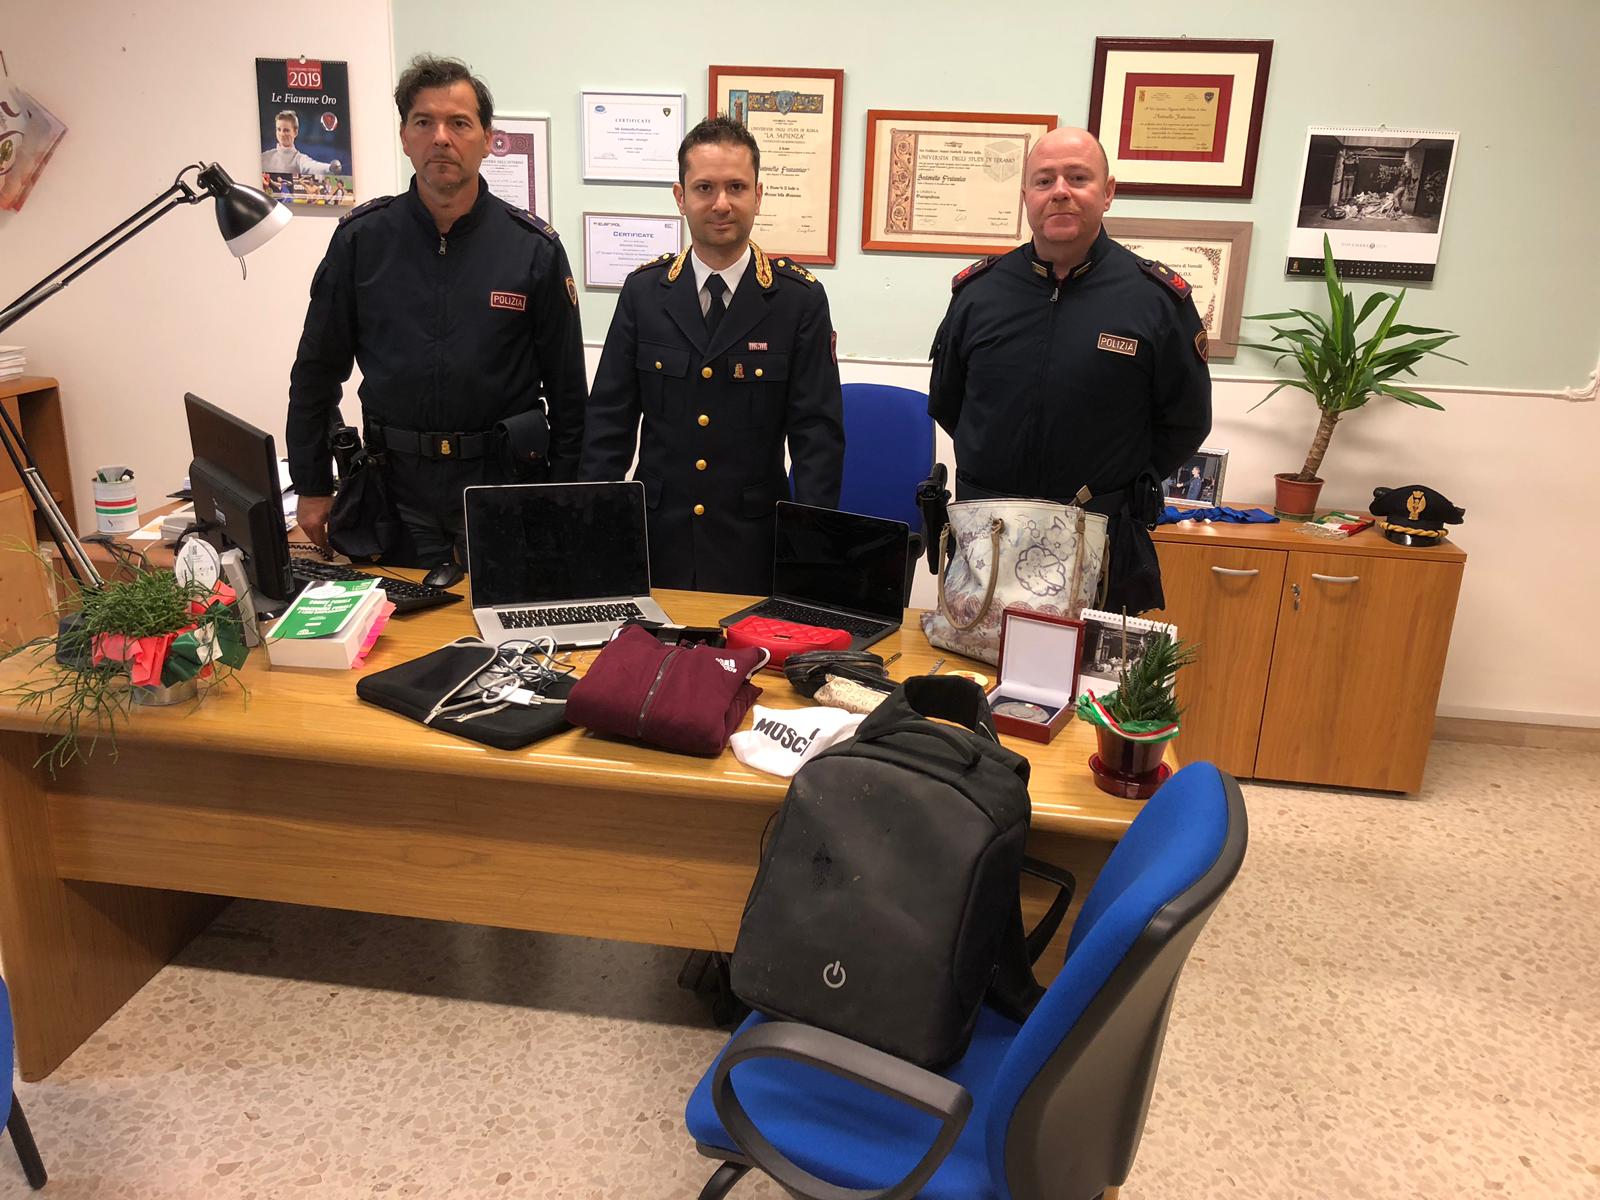 La Polizia riconsegna due Macbook del valore di 3500 euro a due studentesse universitarie vittime di un furto in abitazione.